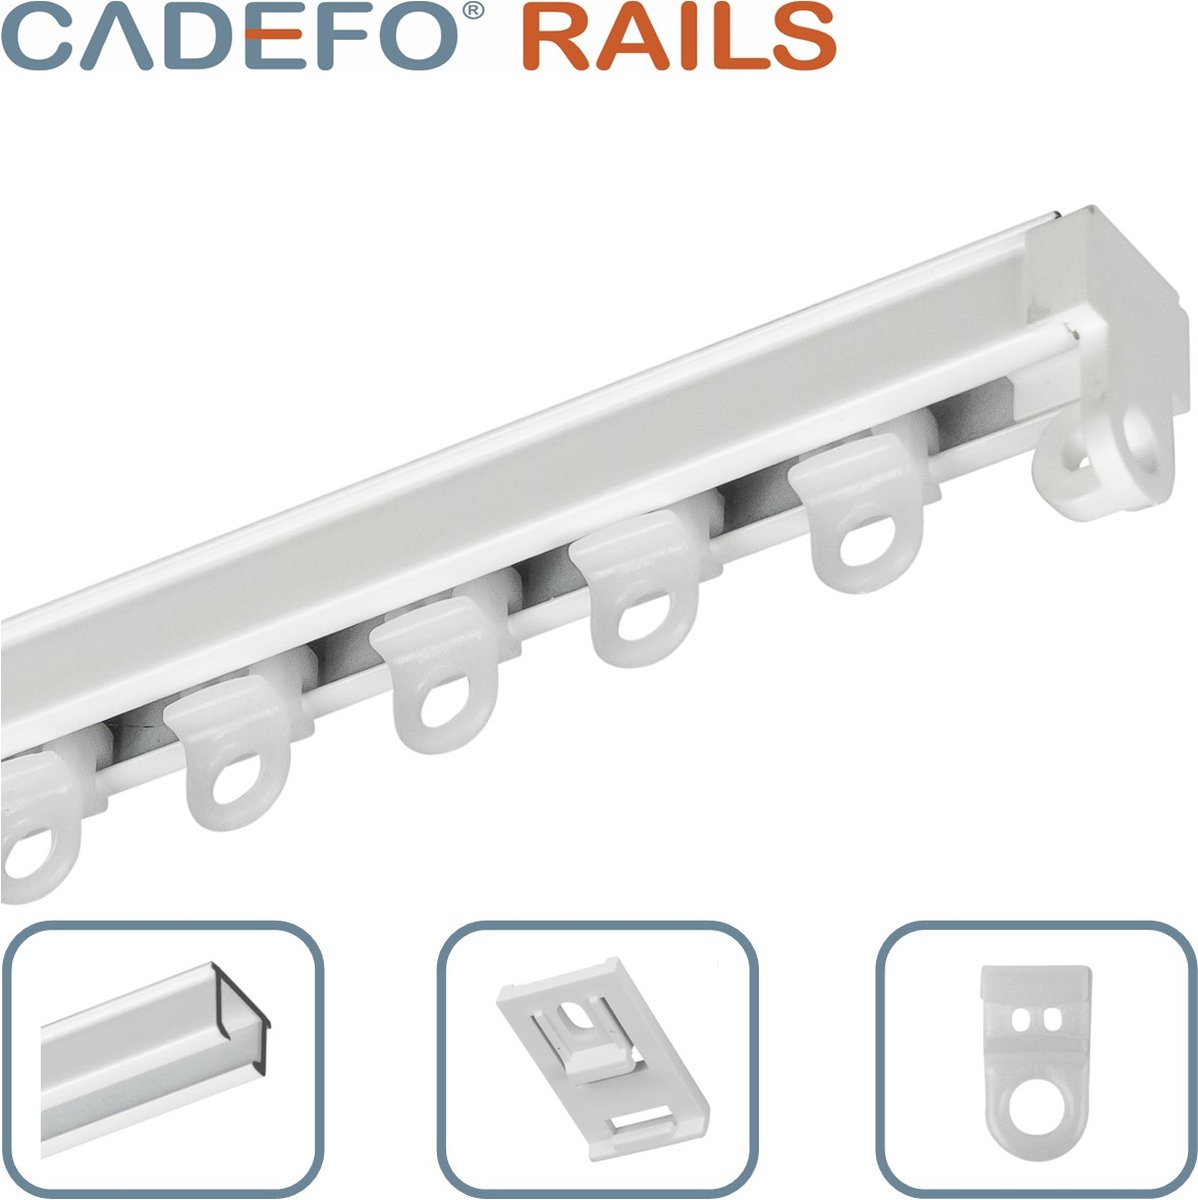 CADEFO RAILS (251 - 300 cm) Gordijnrails - Compleet op maat! - UIT 1 STUK - Leverbaar tot 6 meter - Plafondbevestiging - Lengte 265 cm